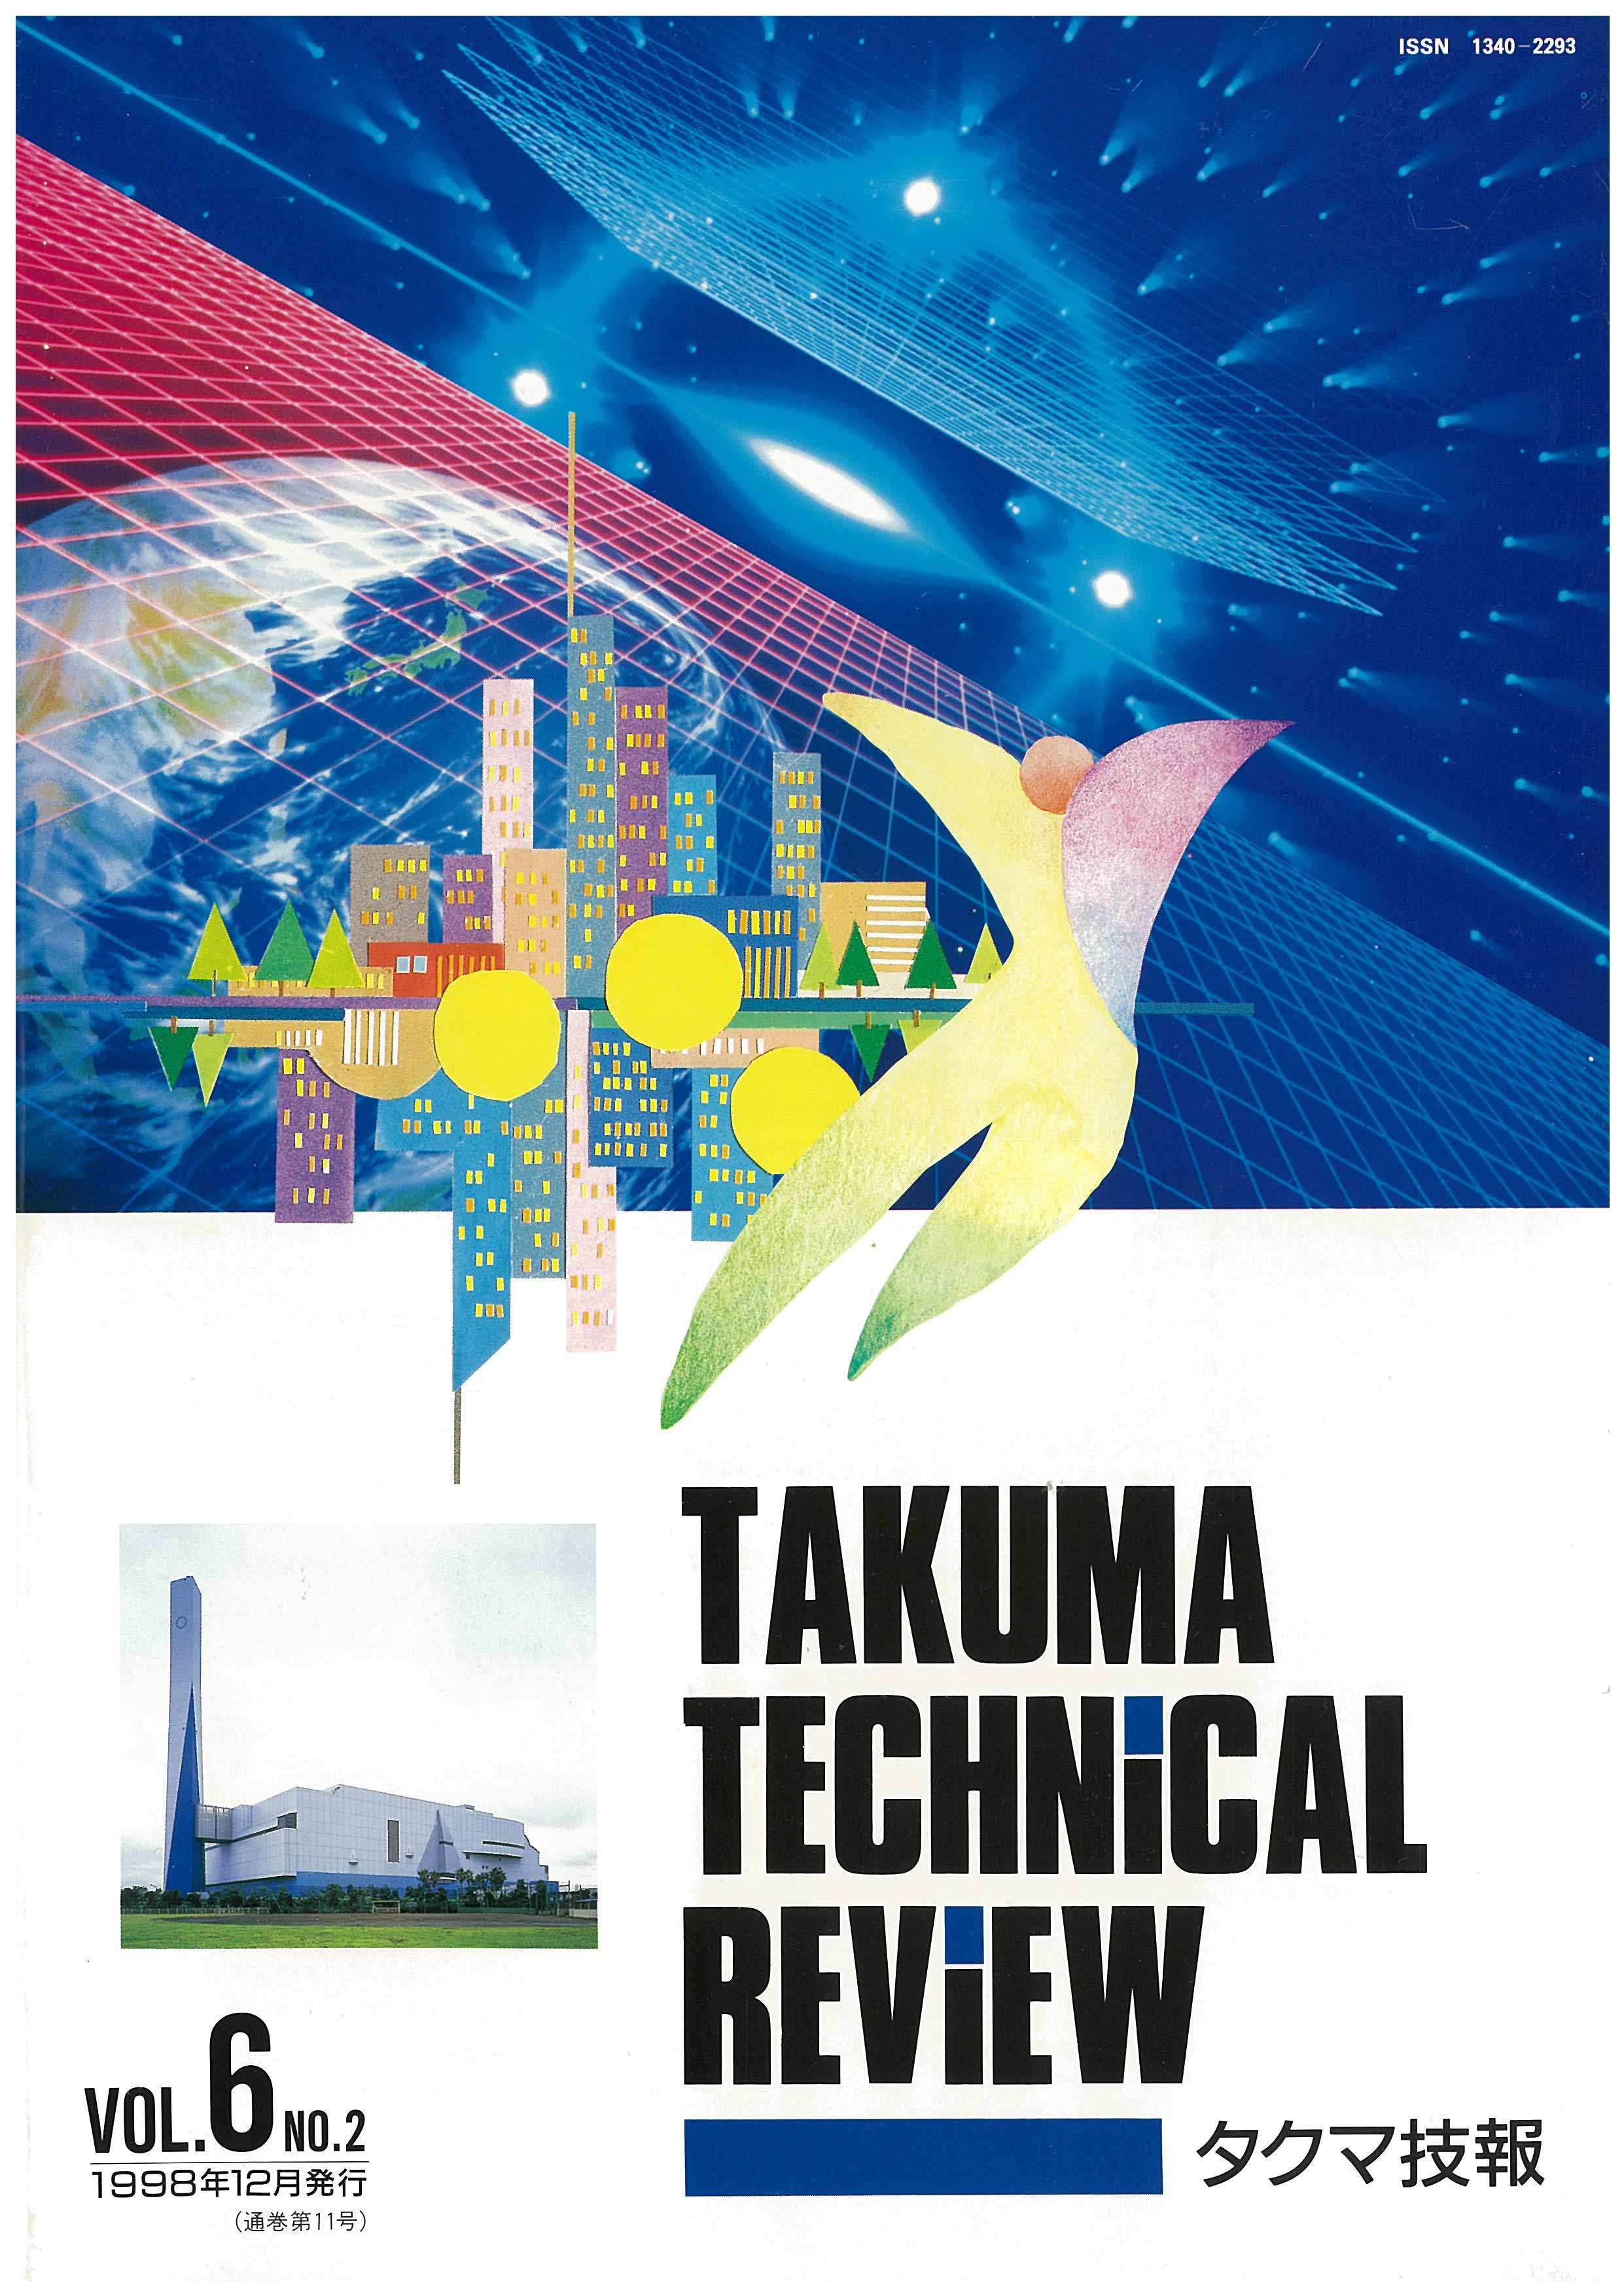 タクマ技報 VOL.6 NO.2（1998年12月発行）